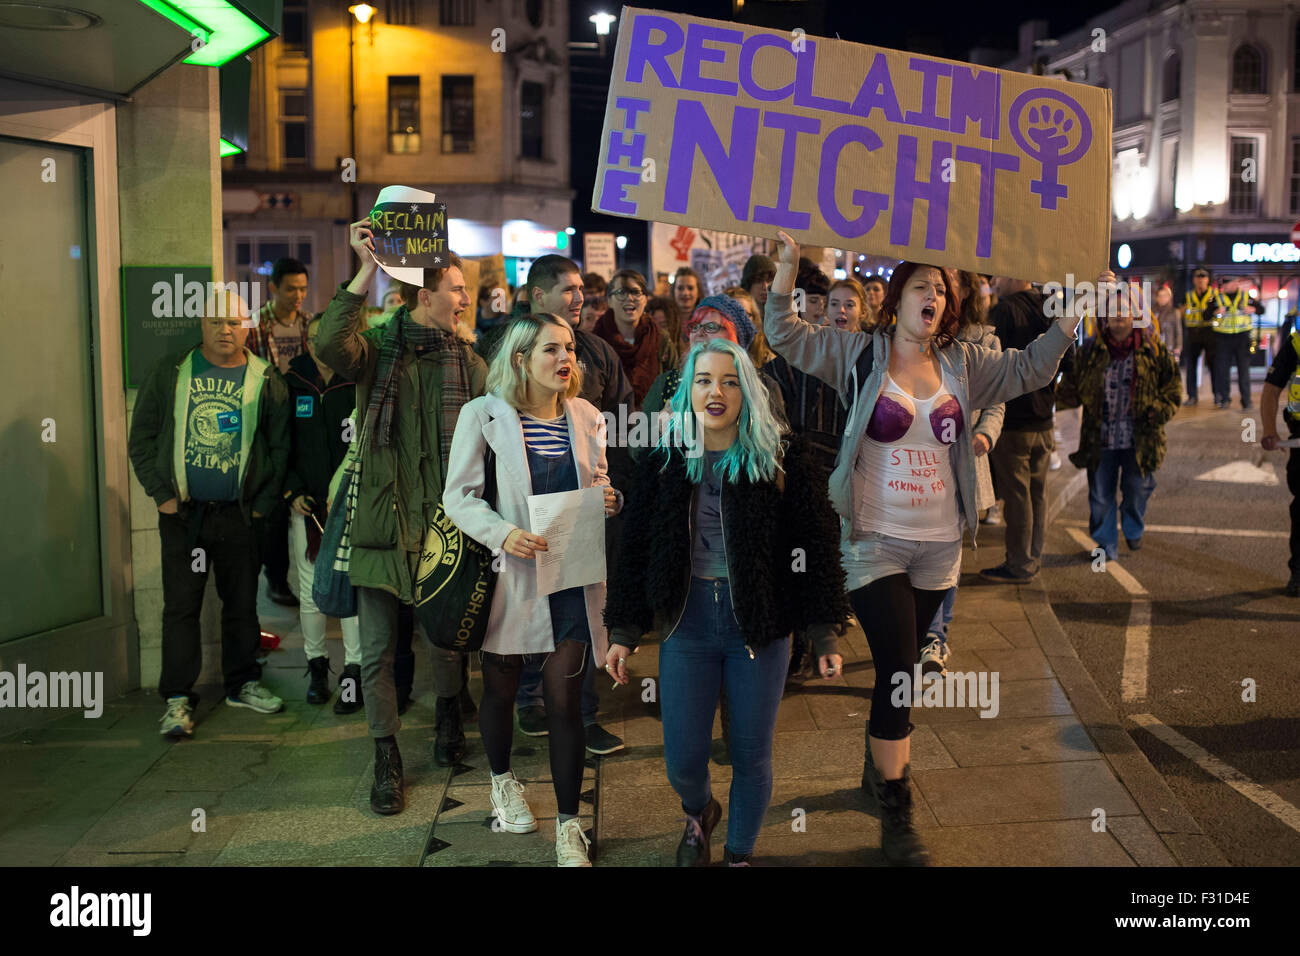 A zurückfordern Nachtmarsch zur Unterstützung der Frauenrechte in Cardiff, Südwales. Stockfoto